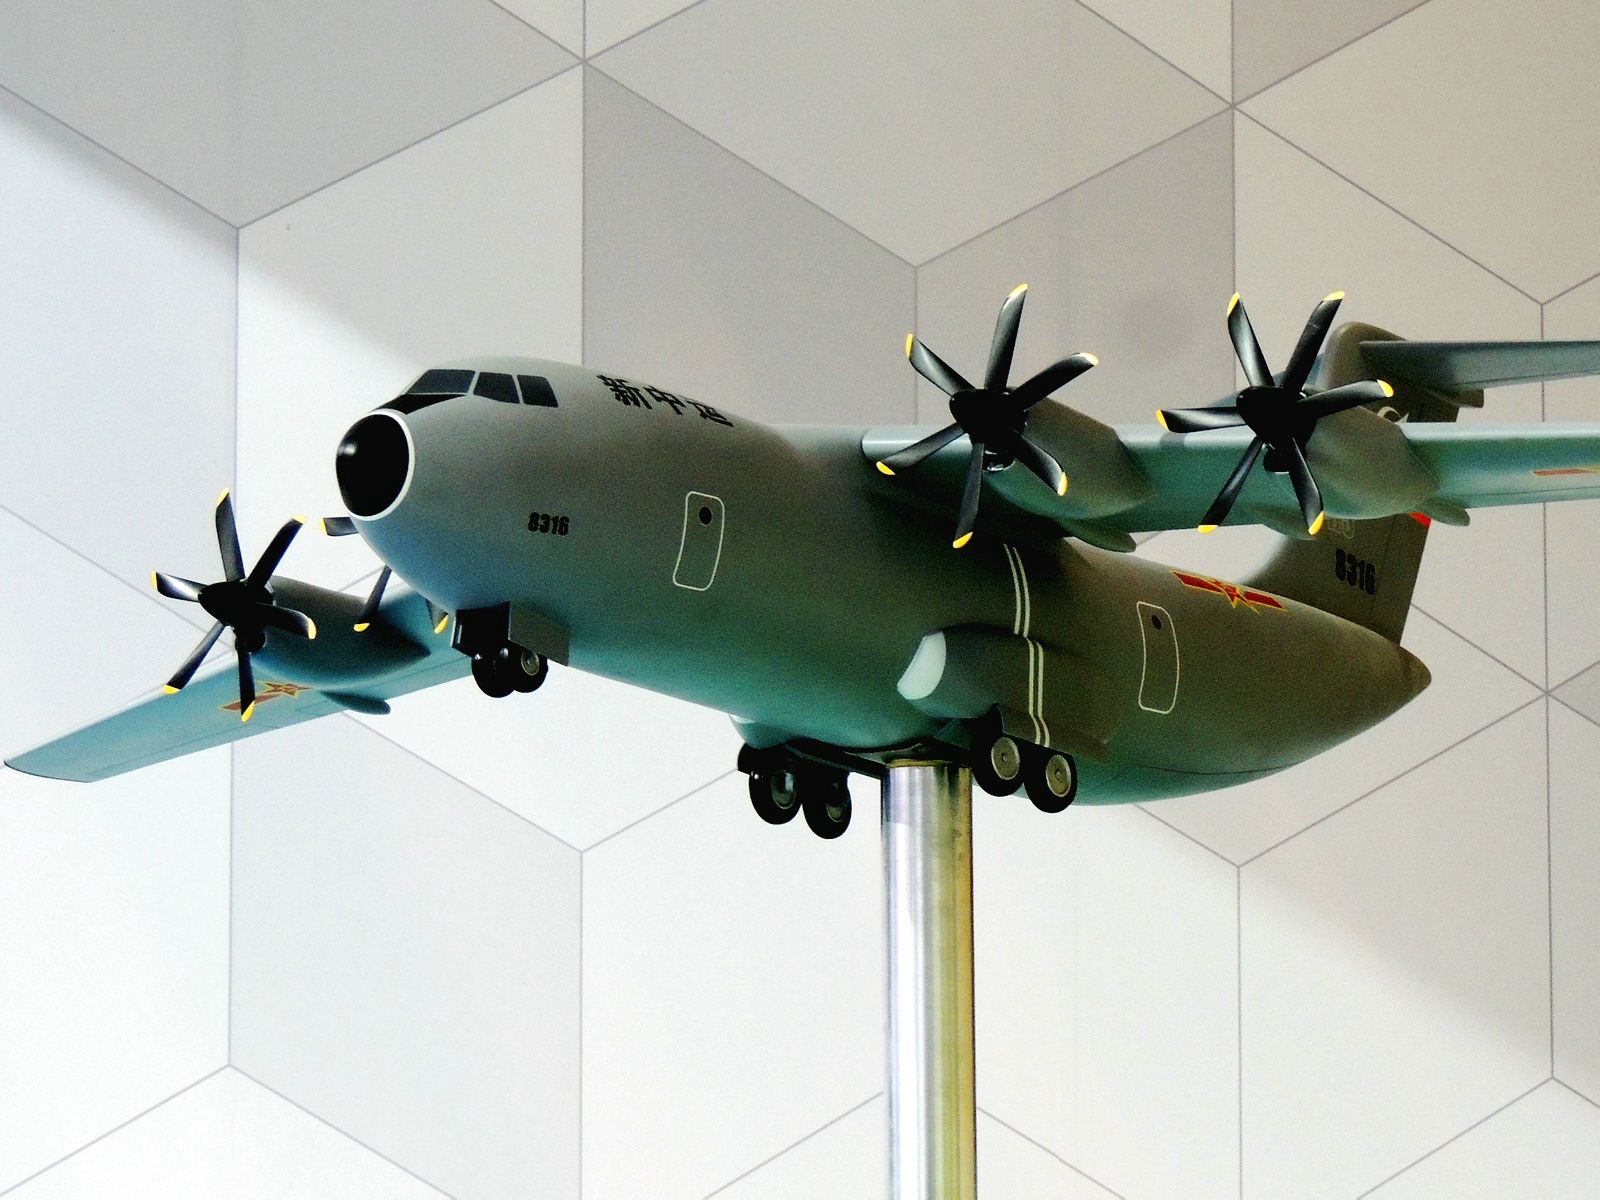 珠海航展上的運-30運輸機模型